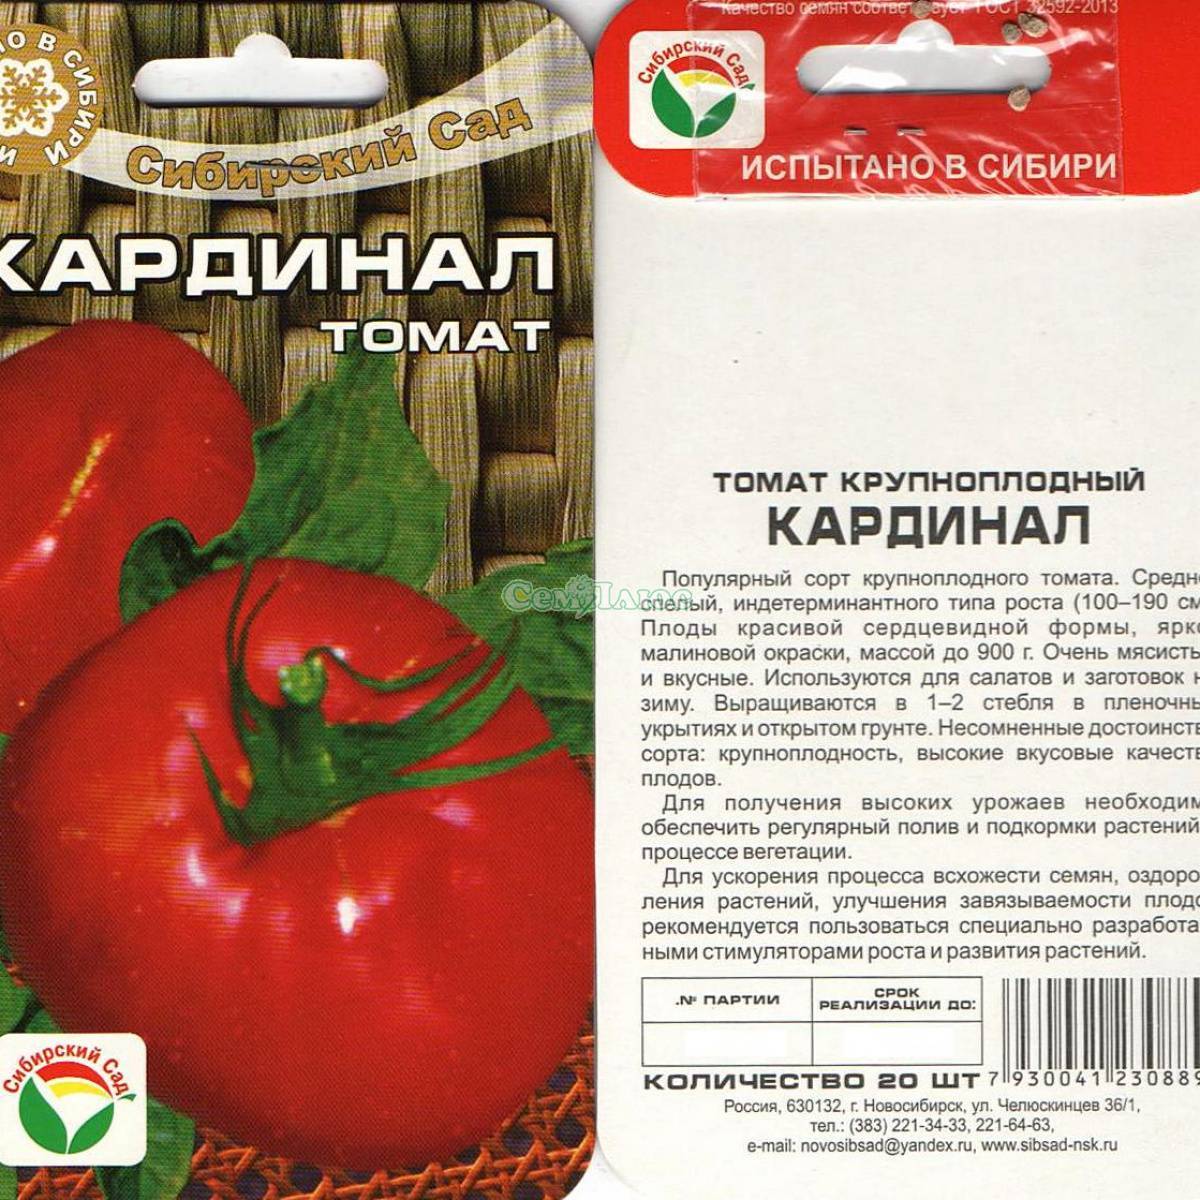 Томат максимка: характеристика и описание сорта, фото семян, отзывы об урожайности помидоров